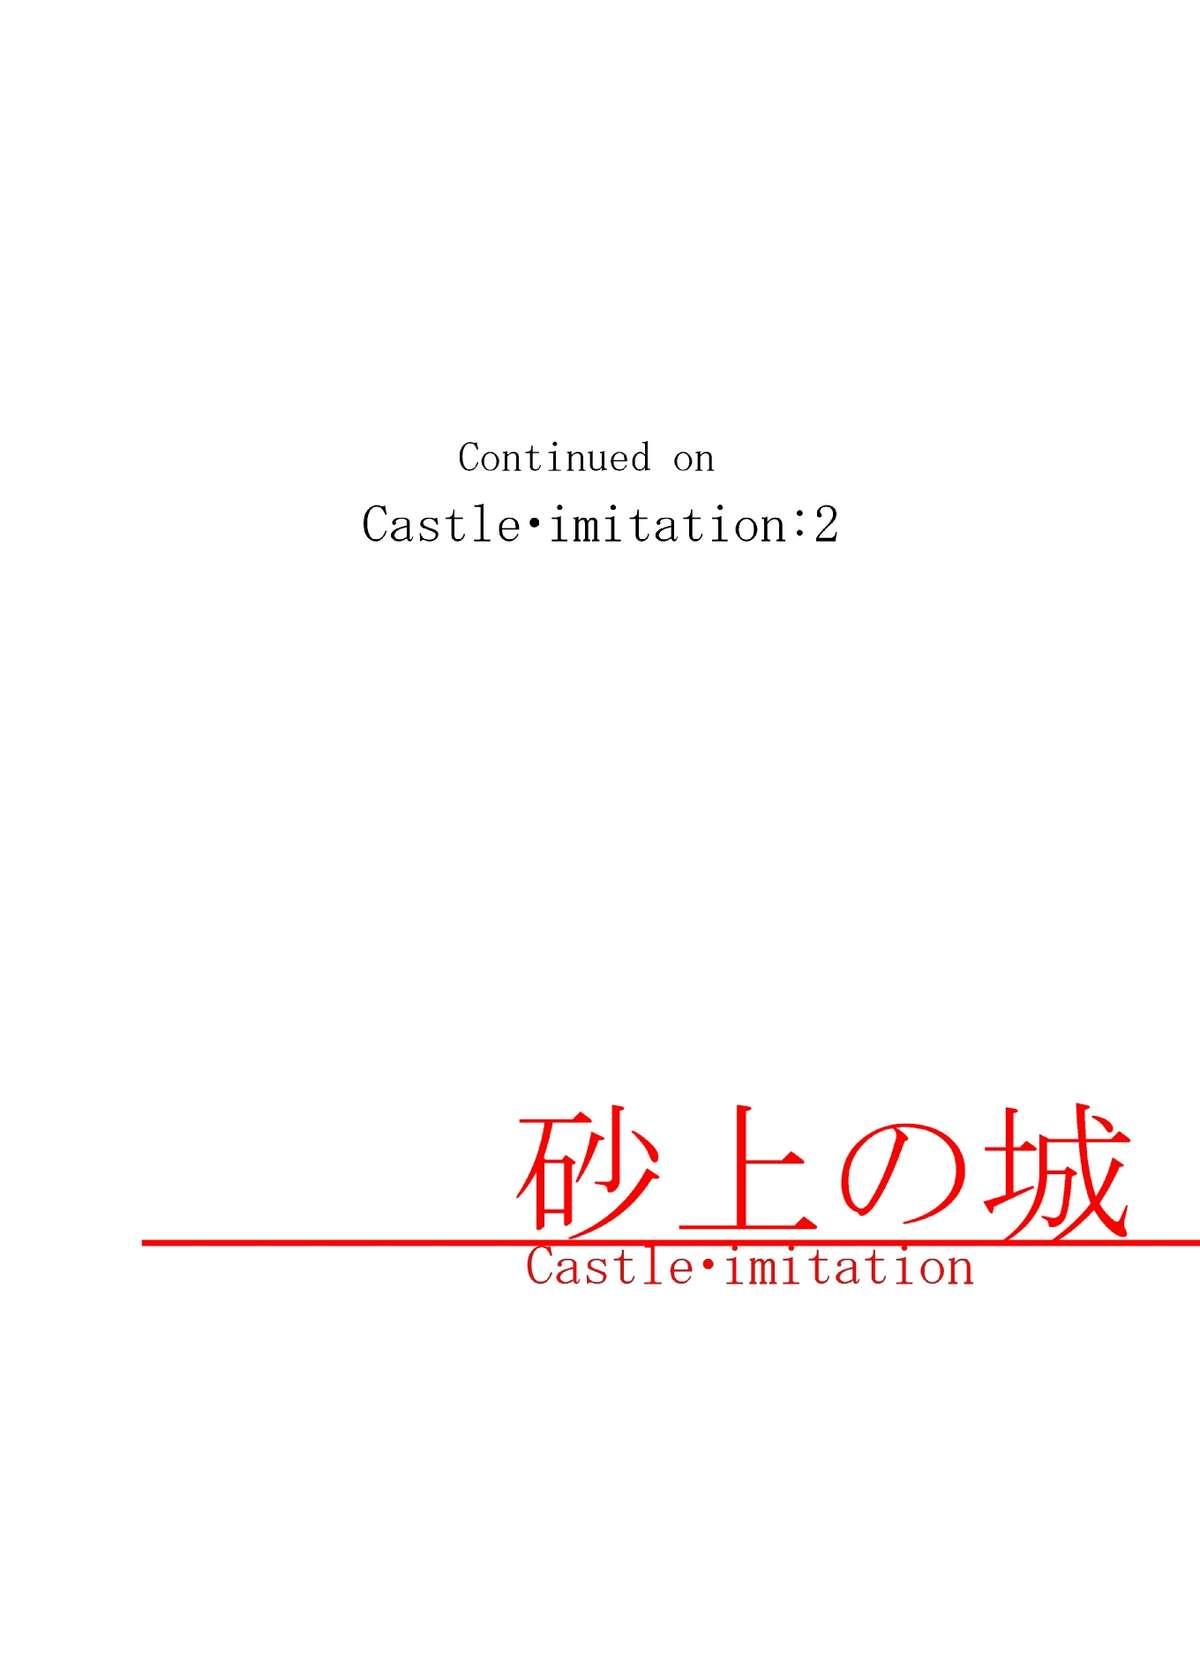 砂上の城/Castle・imitation 29